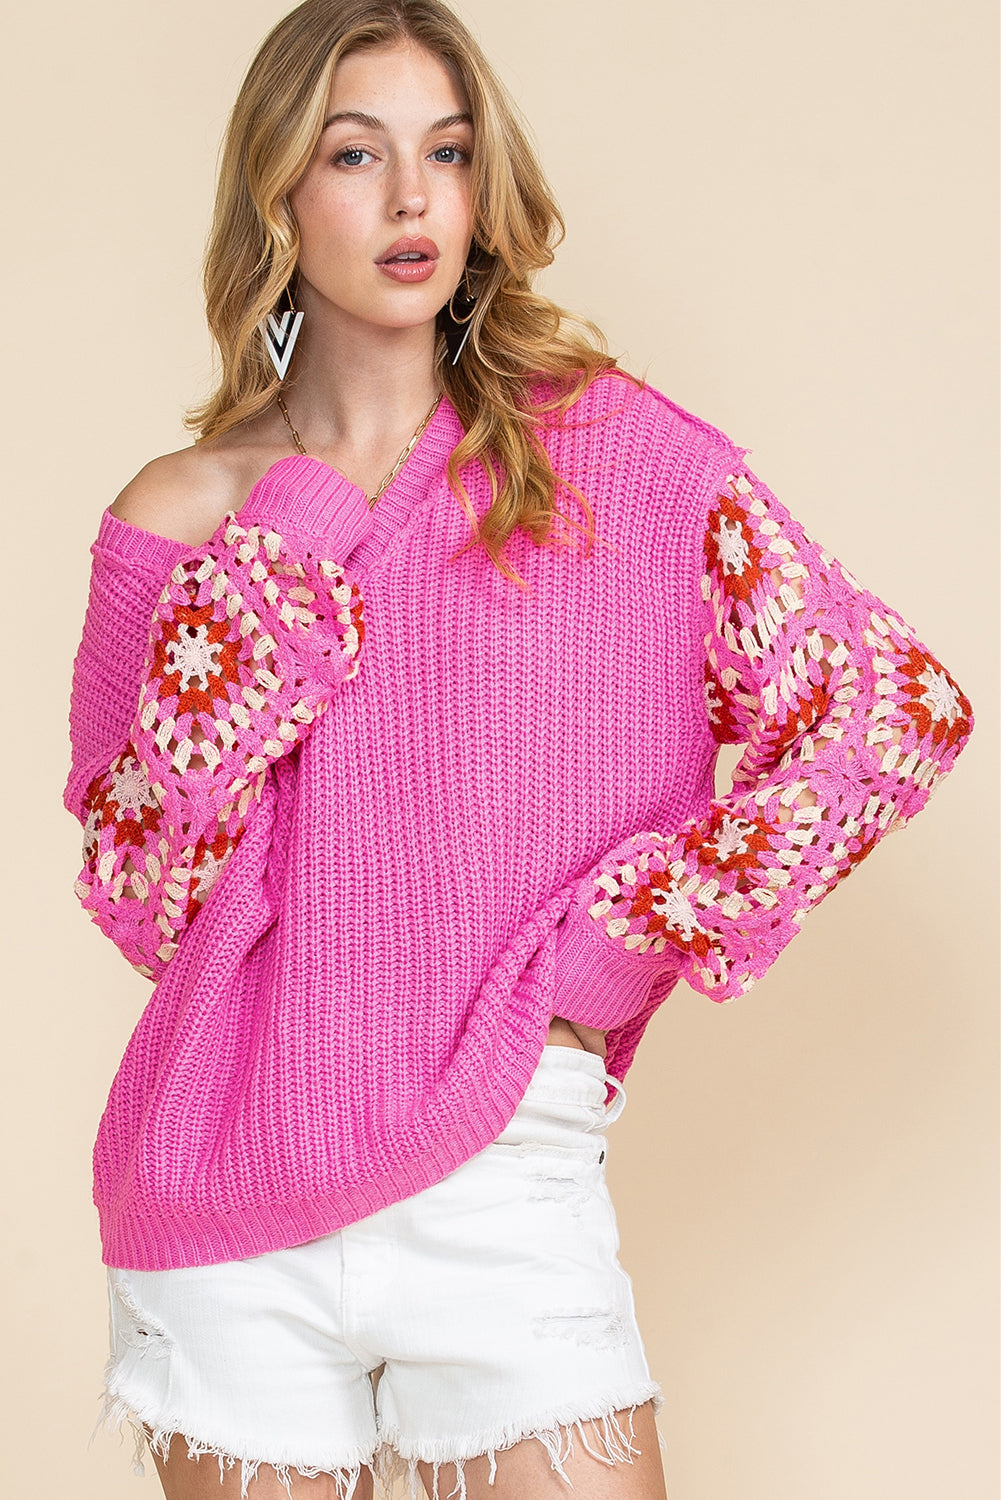 Rose Crochet Long Sleeve Knitted Pullover V Neck Sweater